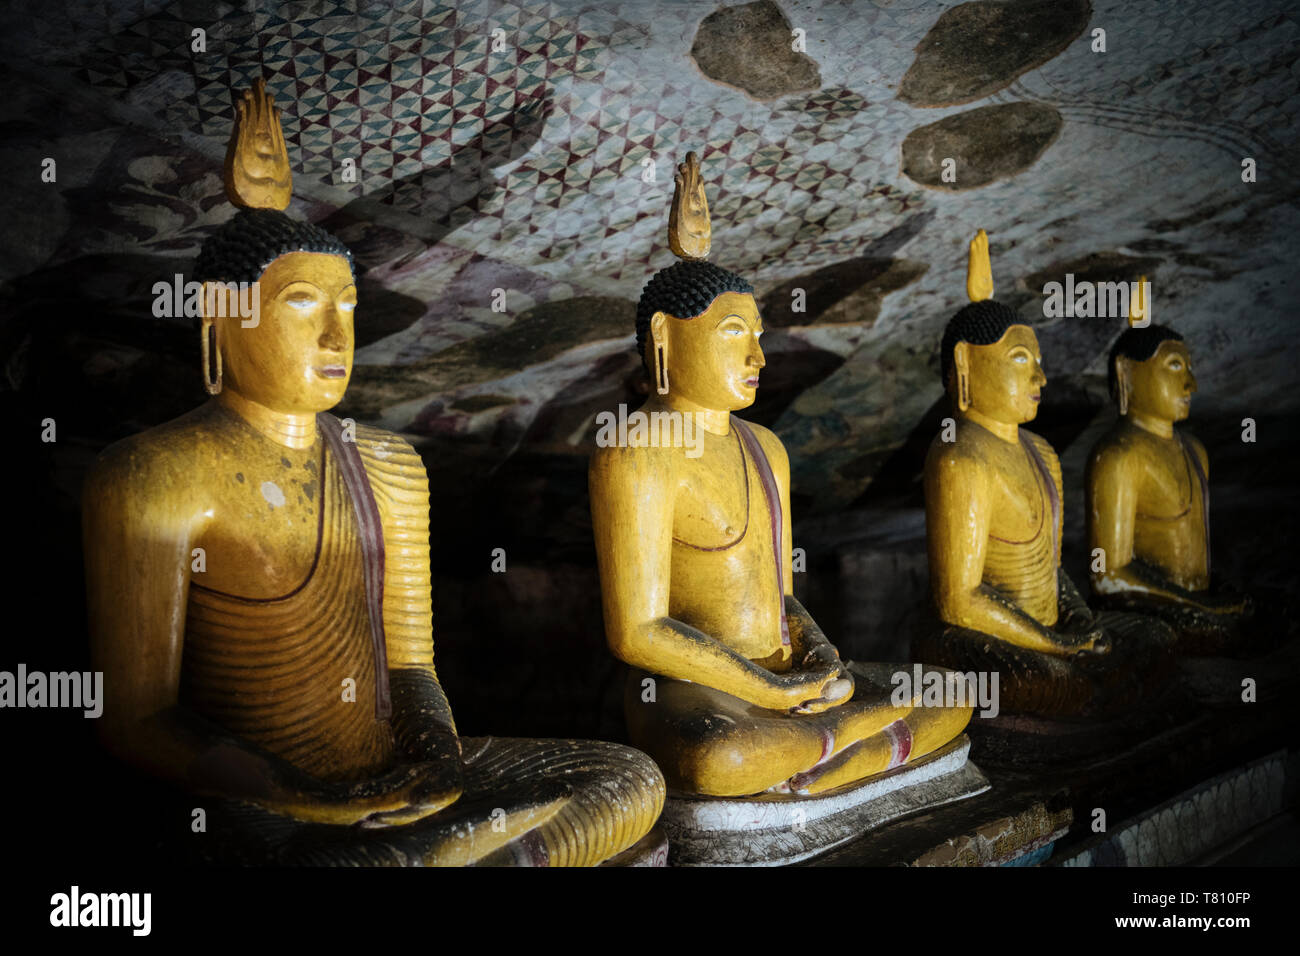 Dambulla Templo Cueva de roca, Sitio del Patrimonio Mundial de la UNESCO, Provincia Central, Sri Lanka, Asia Foto de stock